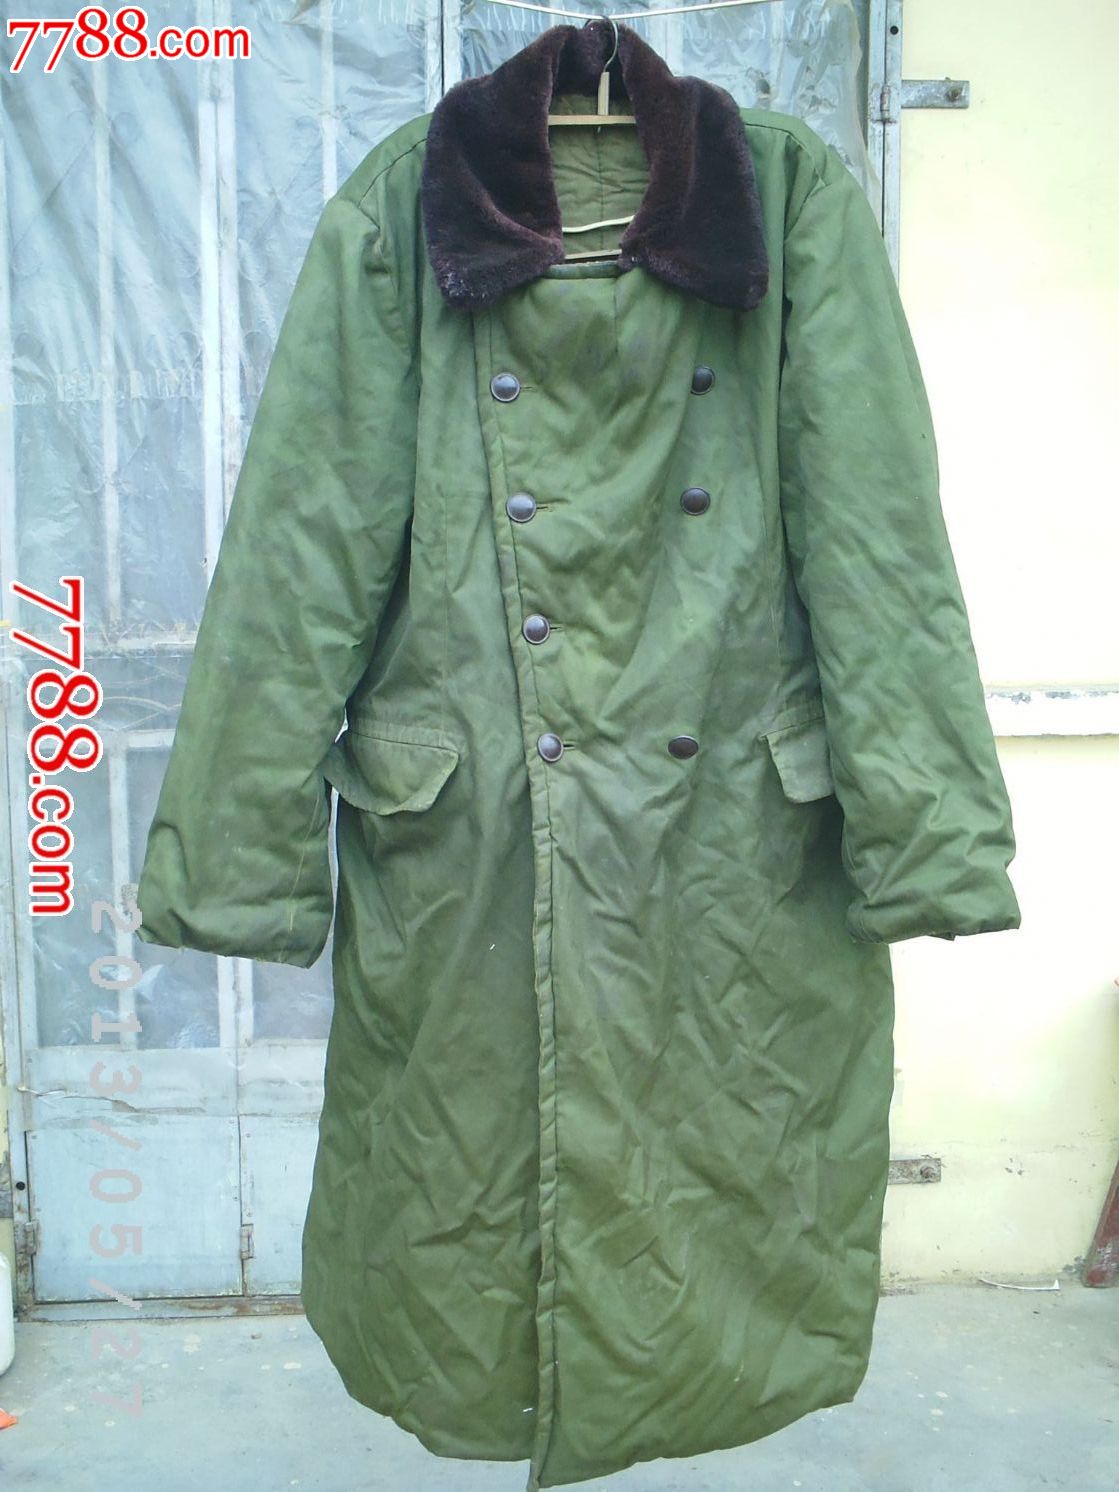 军用棉大衣-价格:399元-se17837909-旧服装-零